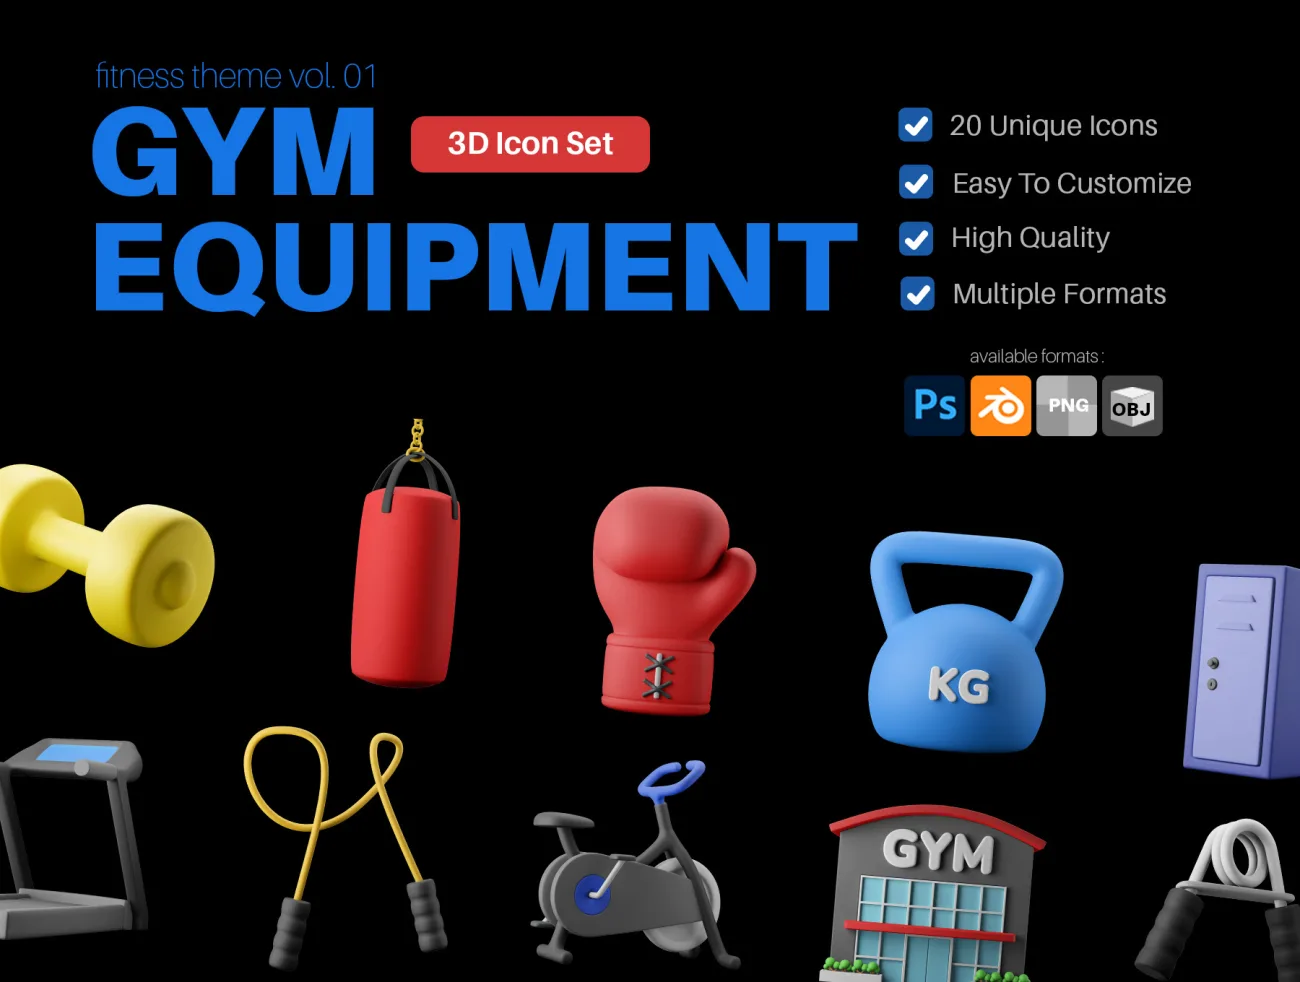 健身房设备3D图标包 Fitness Gym Equipment 3D Icon Pack c4d, blender, psd格式缩略图到位啦UI